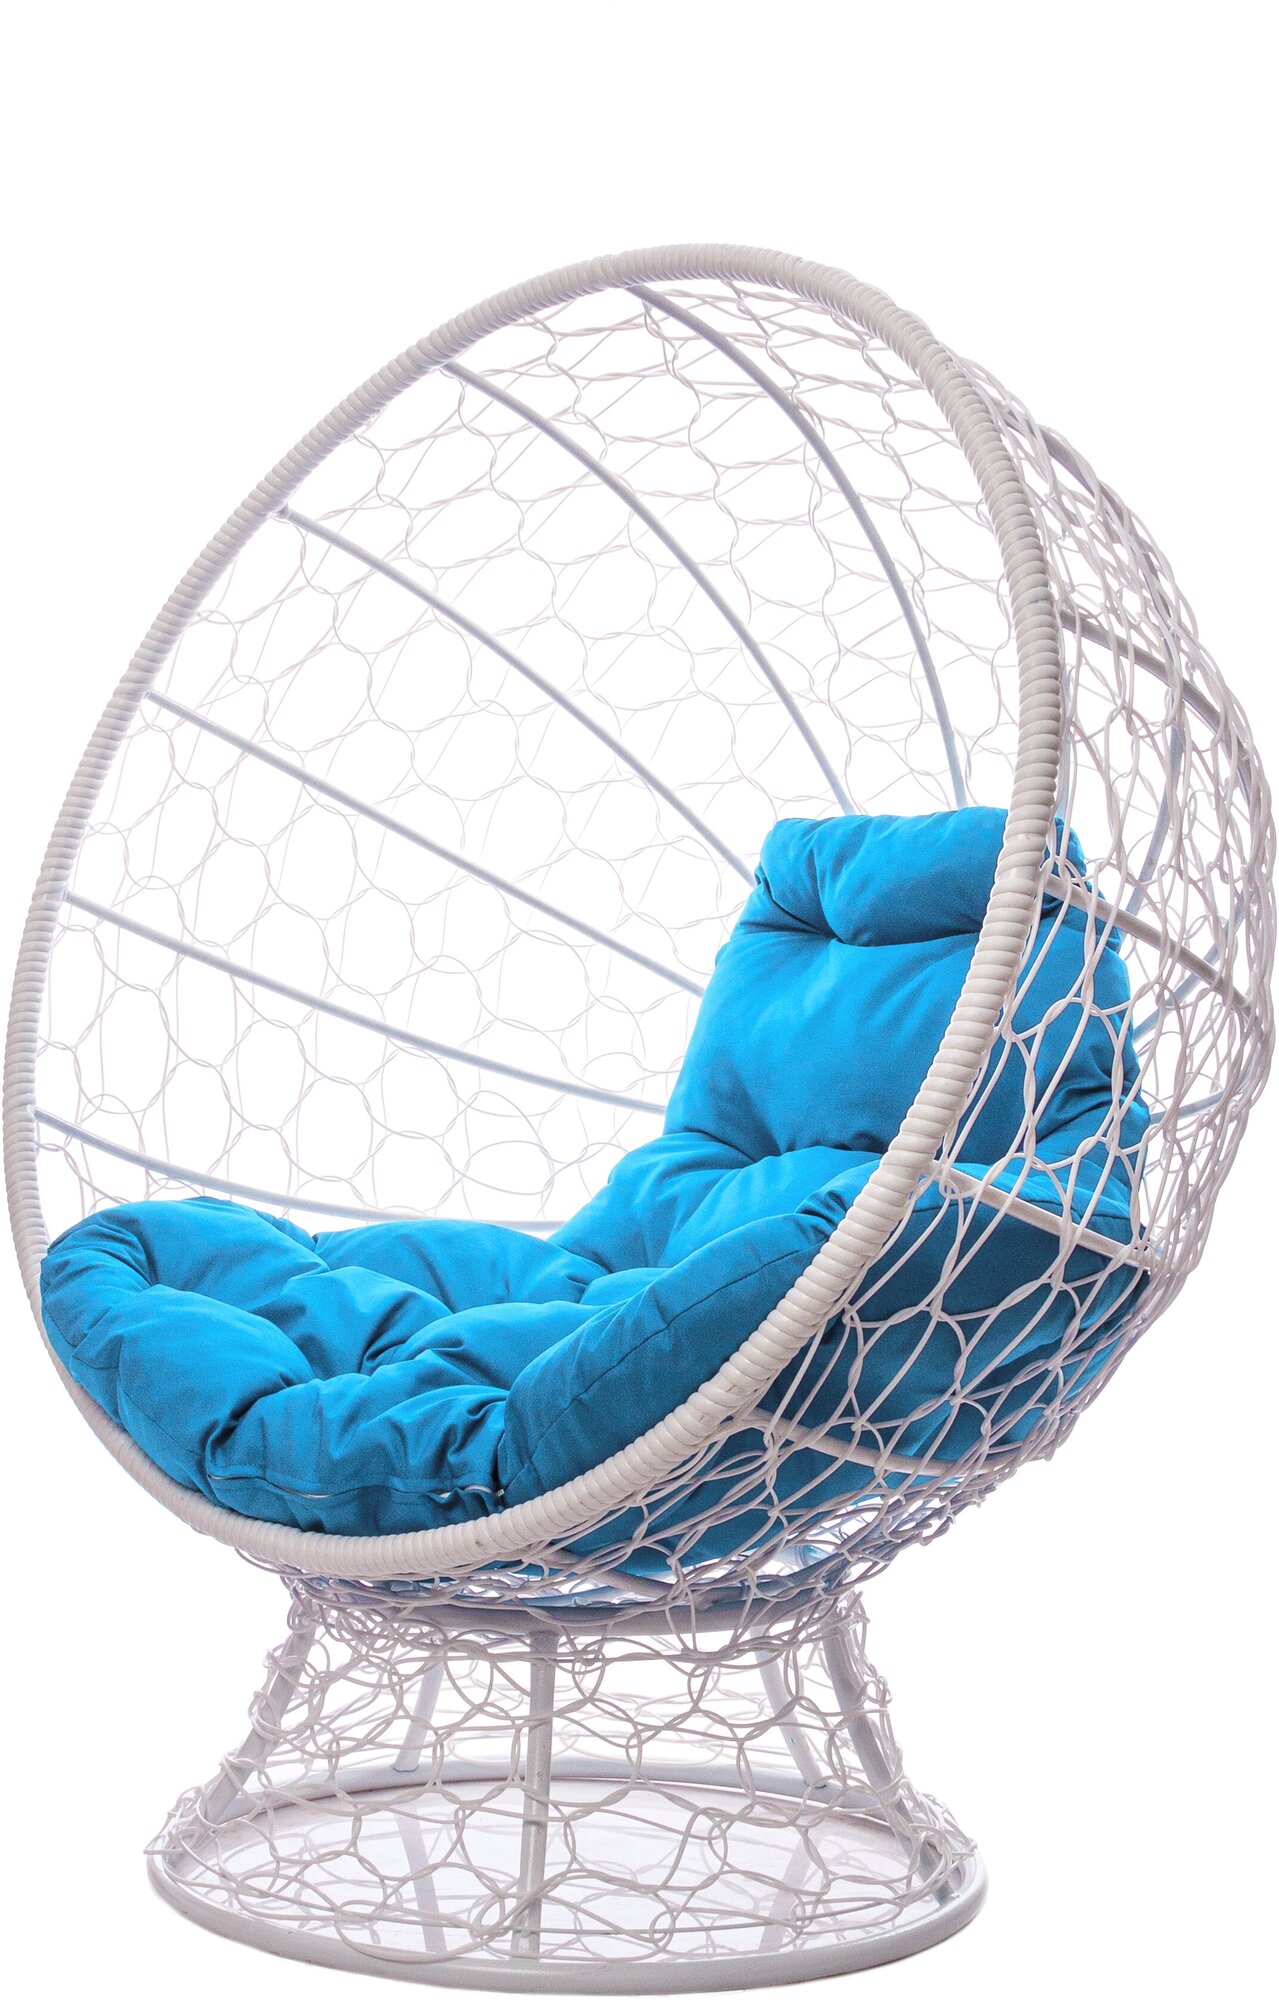 Кресло садовое M-Group Кокос на подставке ротанг белый 11590103 голубая подушка - фотография № 1